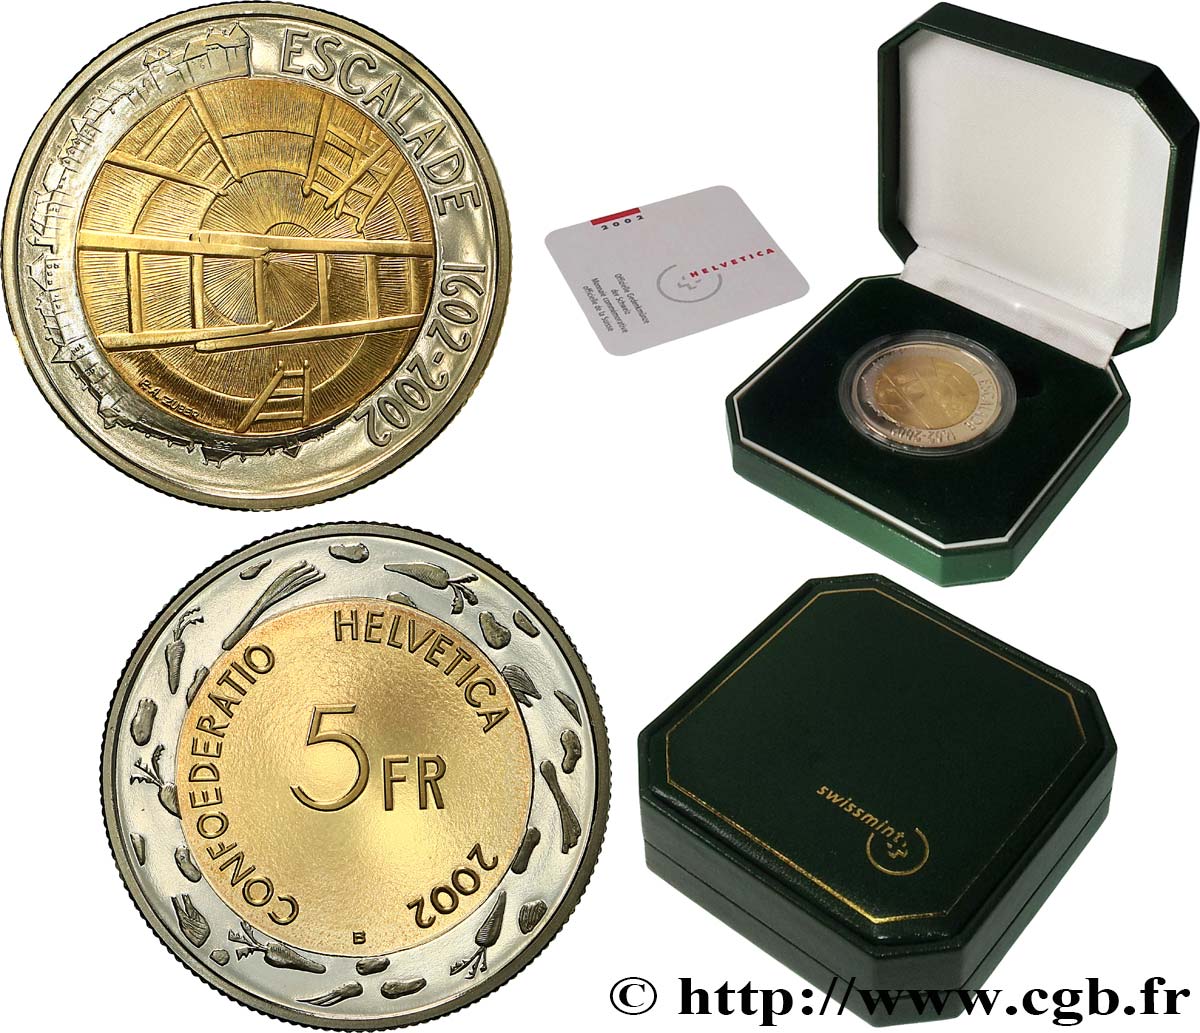 SUISSE 5 Francs Proof 400e anniversaire de l’Escalade 2002 Berne - B BE 